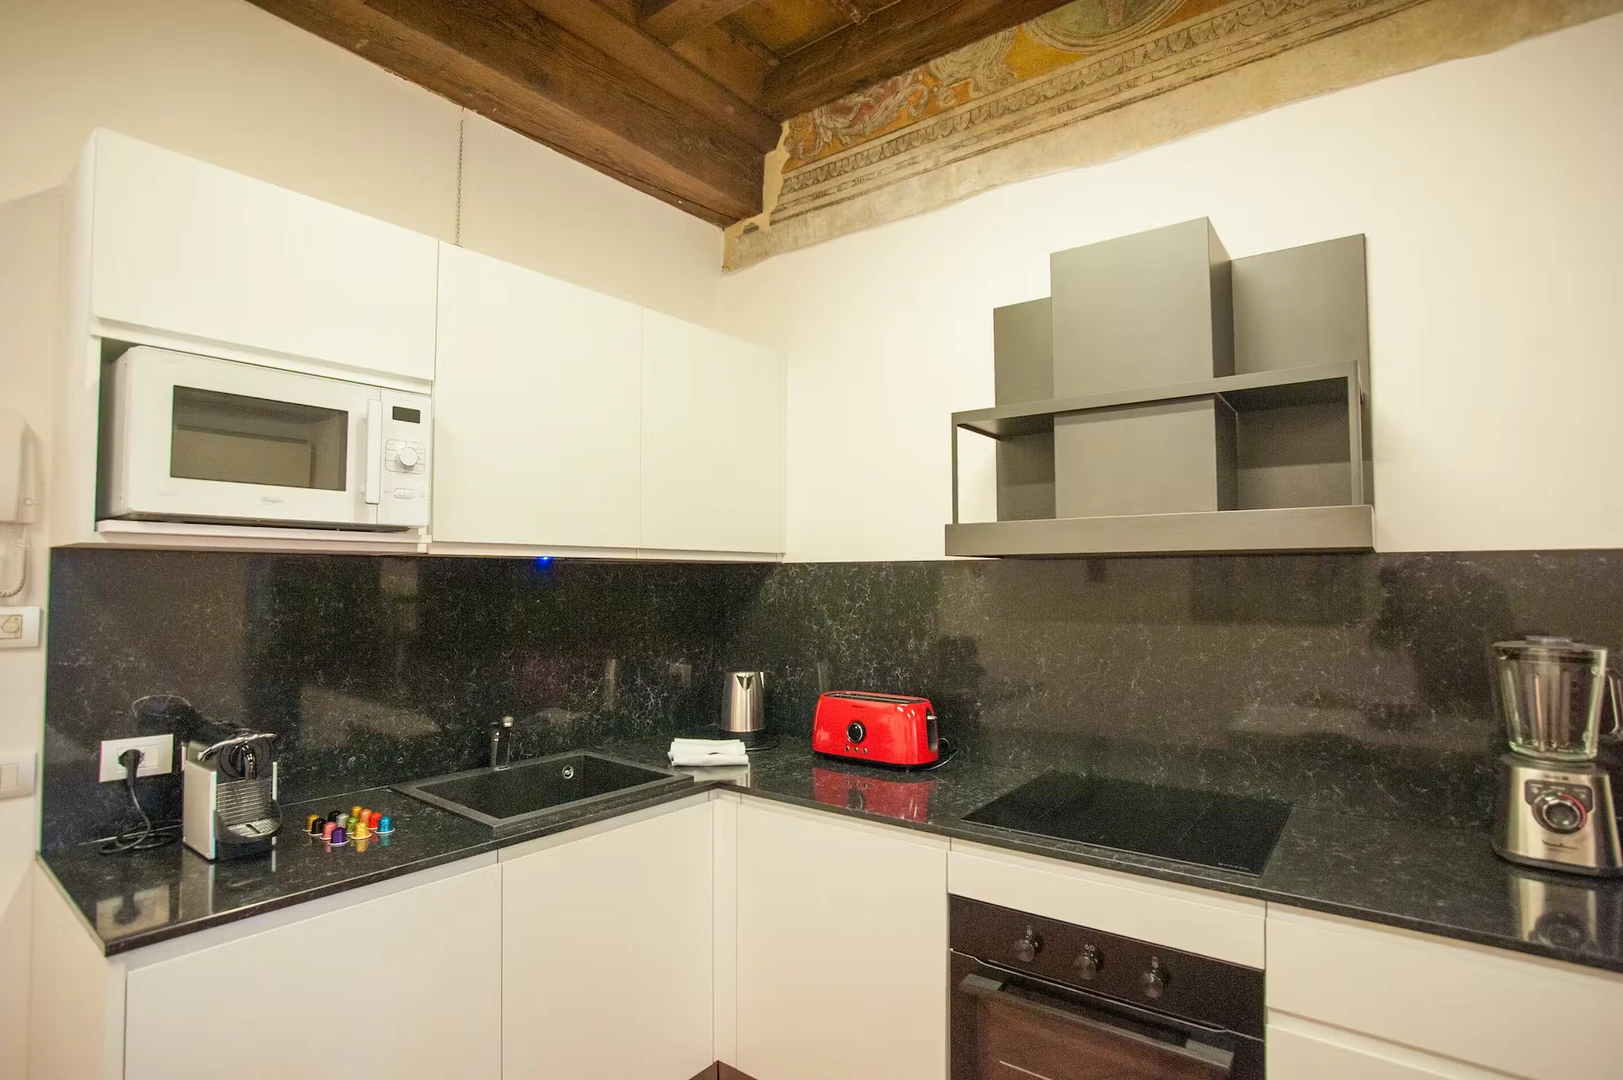 Apartamento moderno y luminoso en Verona